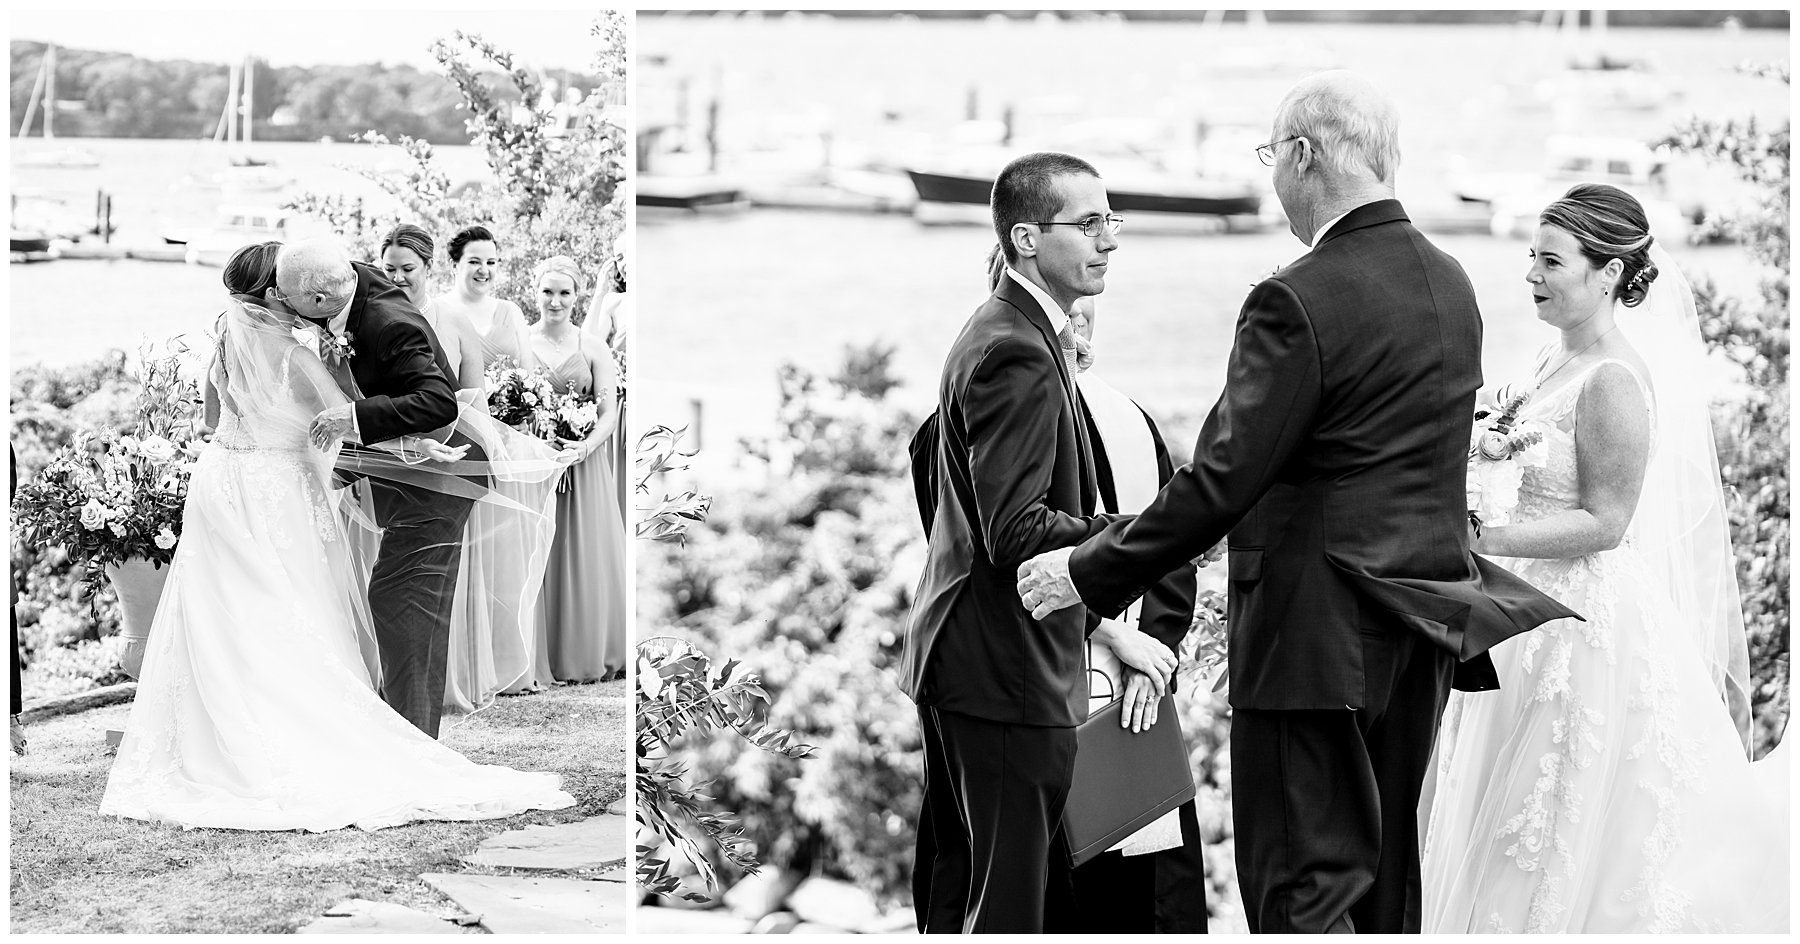 Harborview at jones Landing Peaks Island Wedding Photographer, Peaks Island Wedding Photographer, Two Adventurous Souls- 071622_0039.jpg